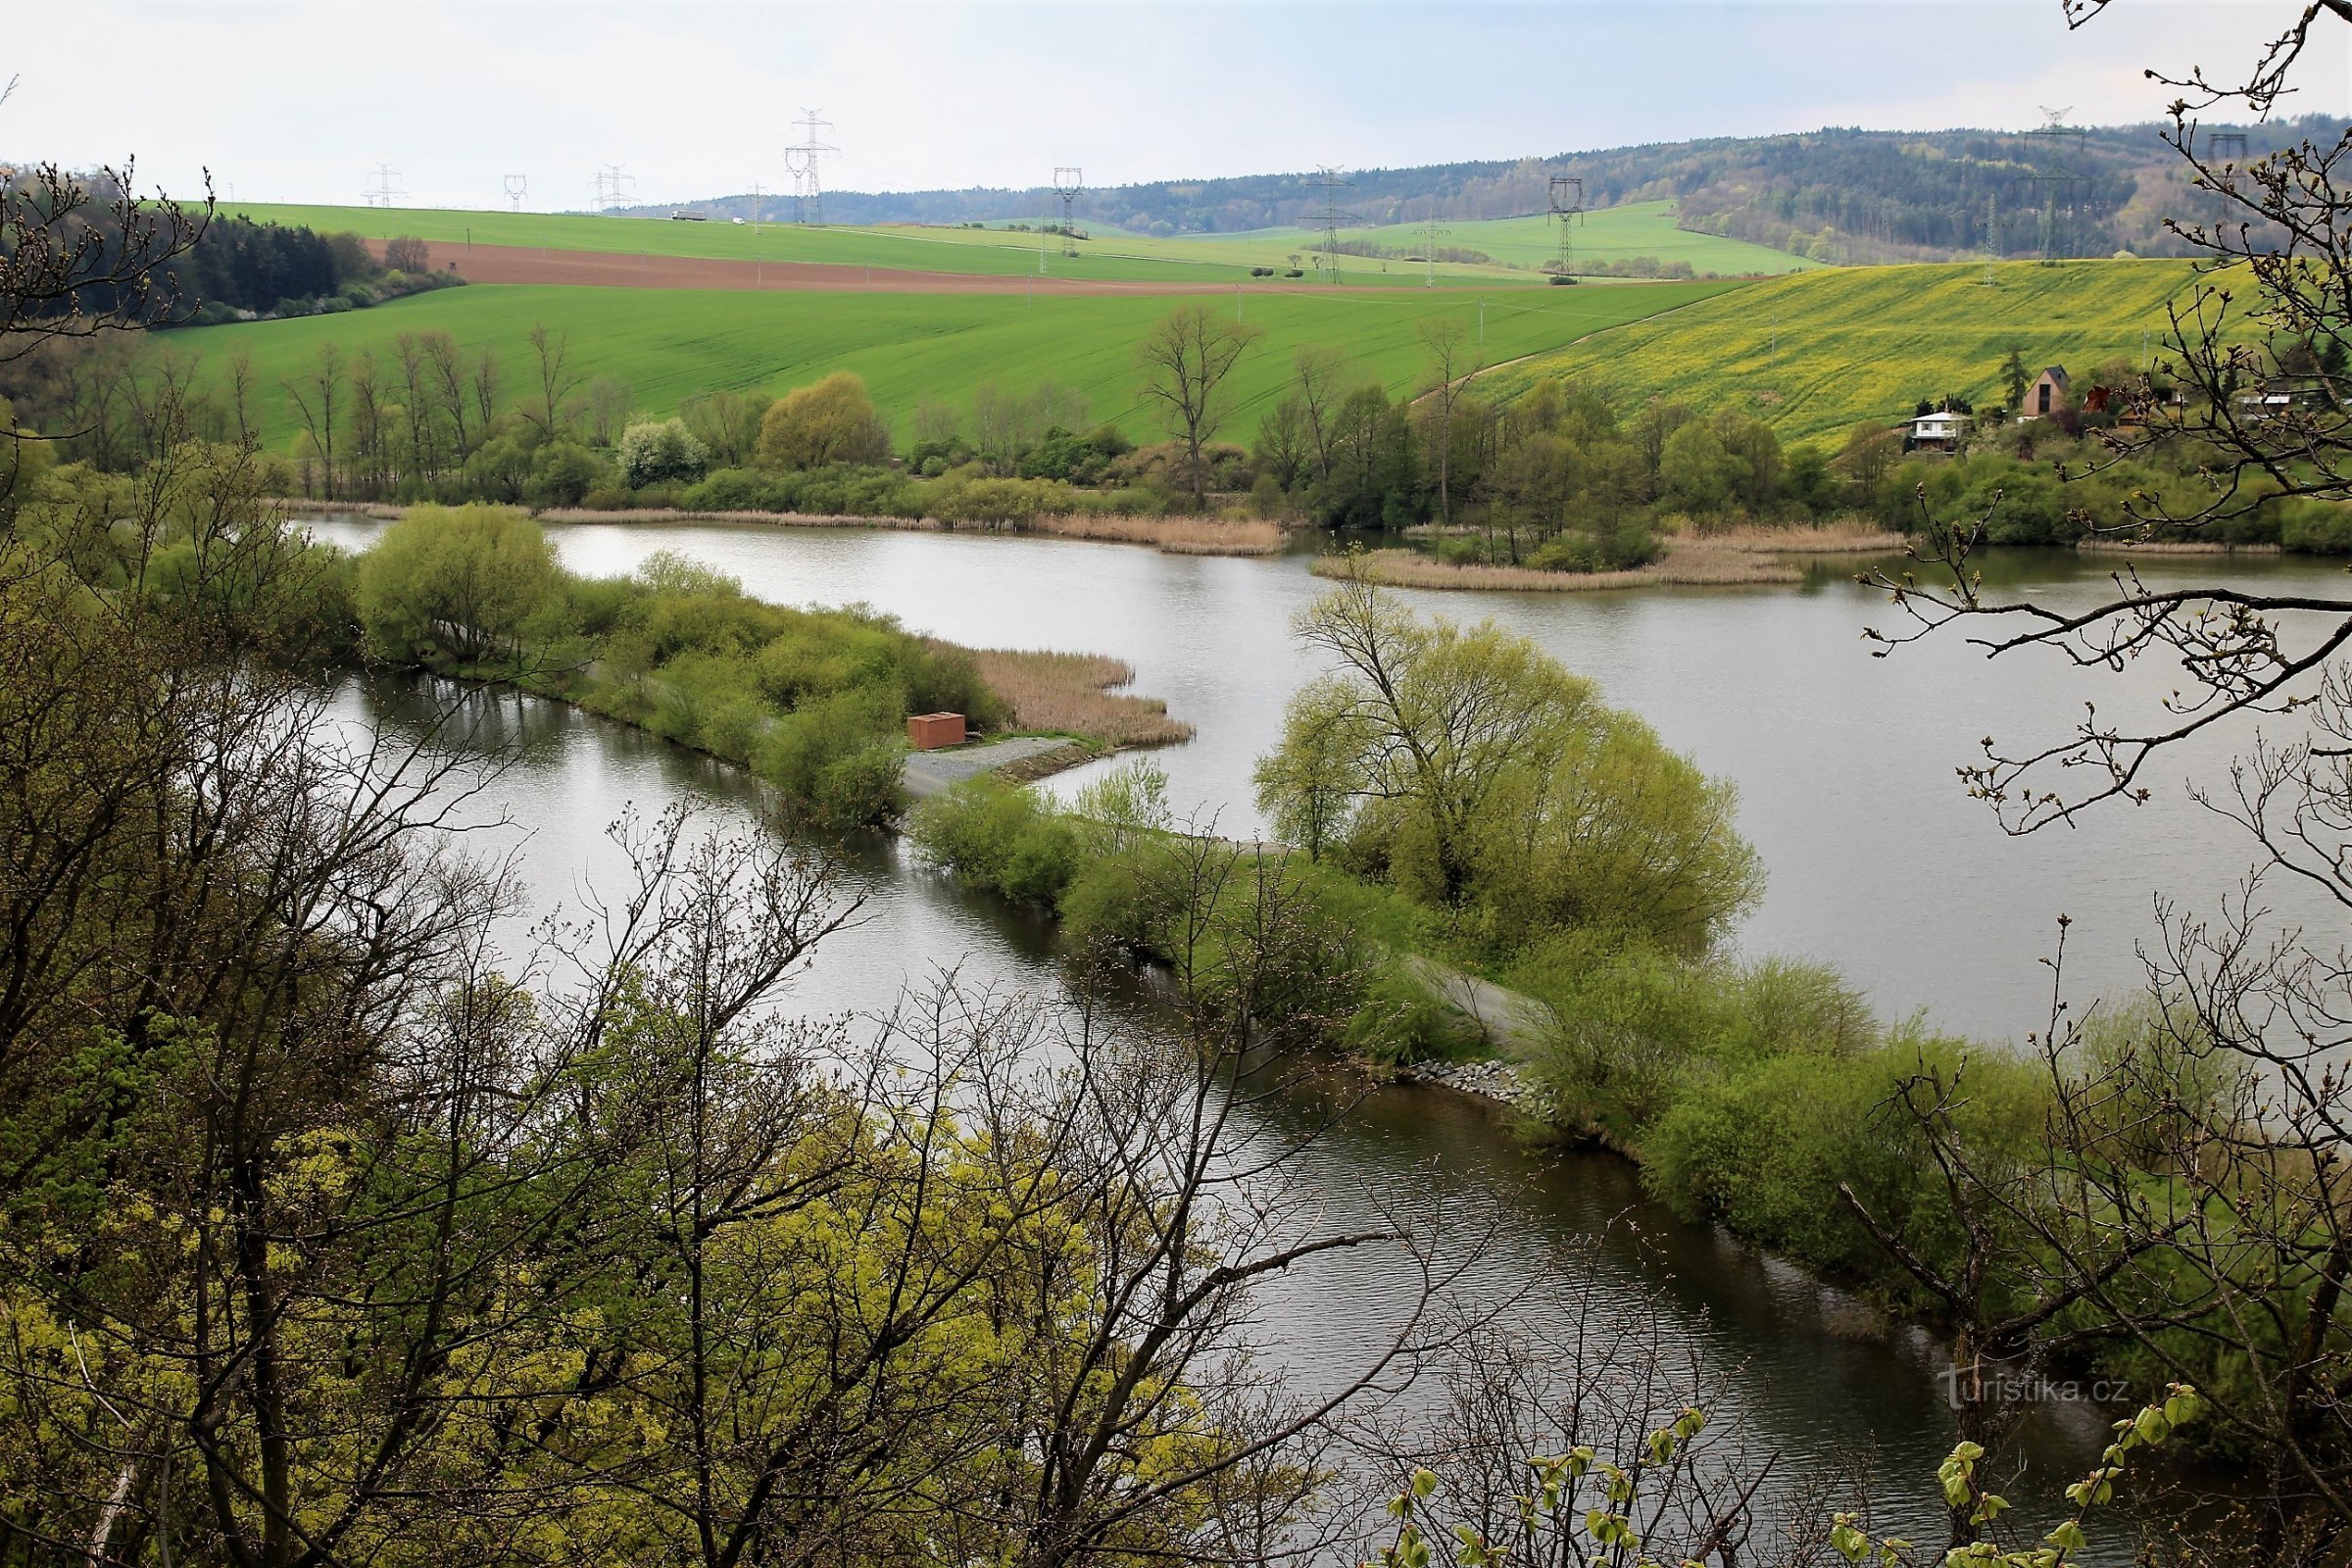 Vedere a mlaștinii de la punctul de belvedere pe marcajul galben, în prim plan capătul digului de pe râul Svratka